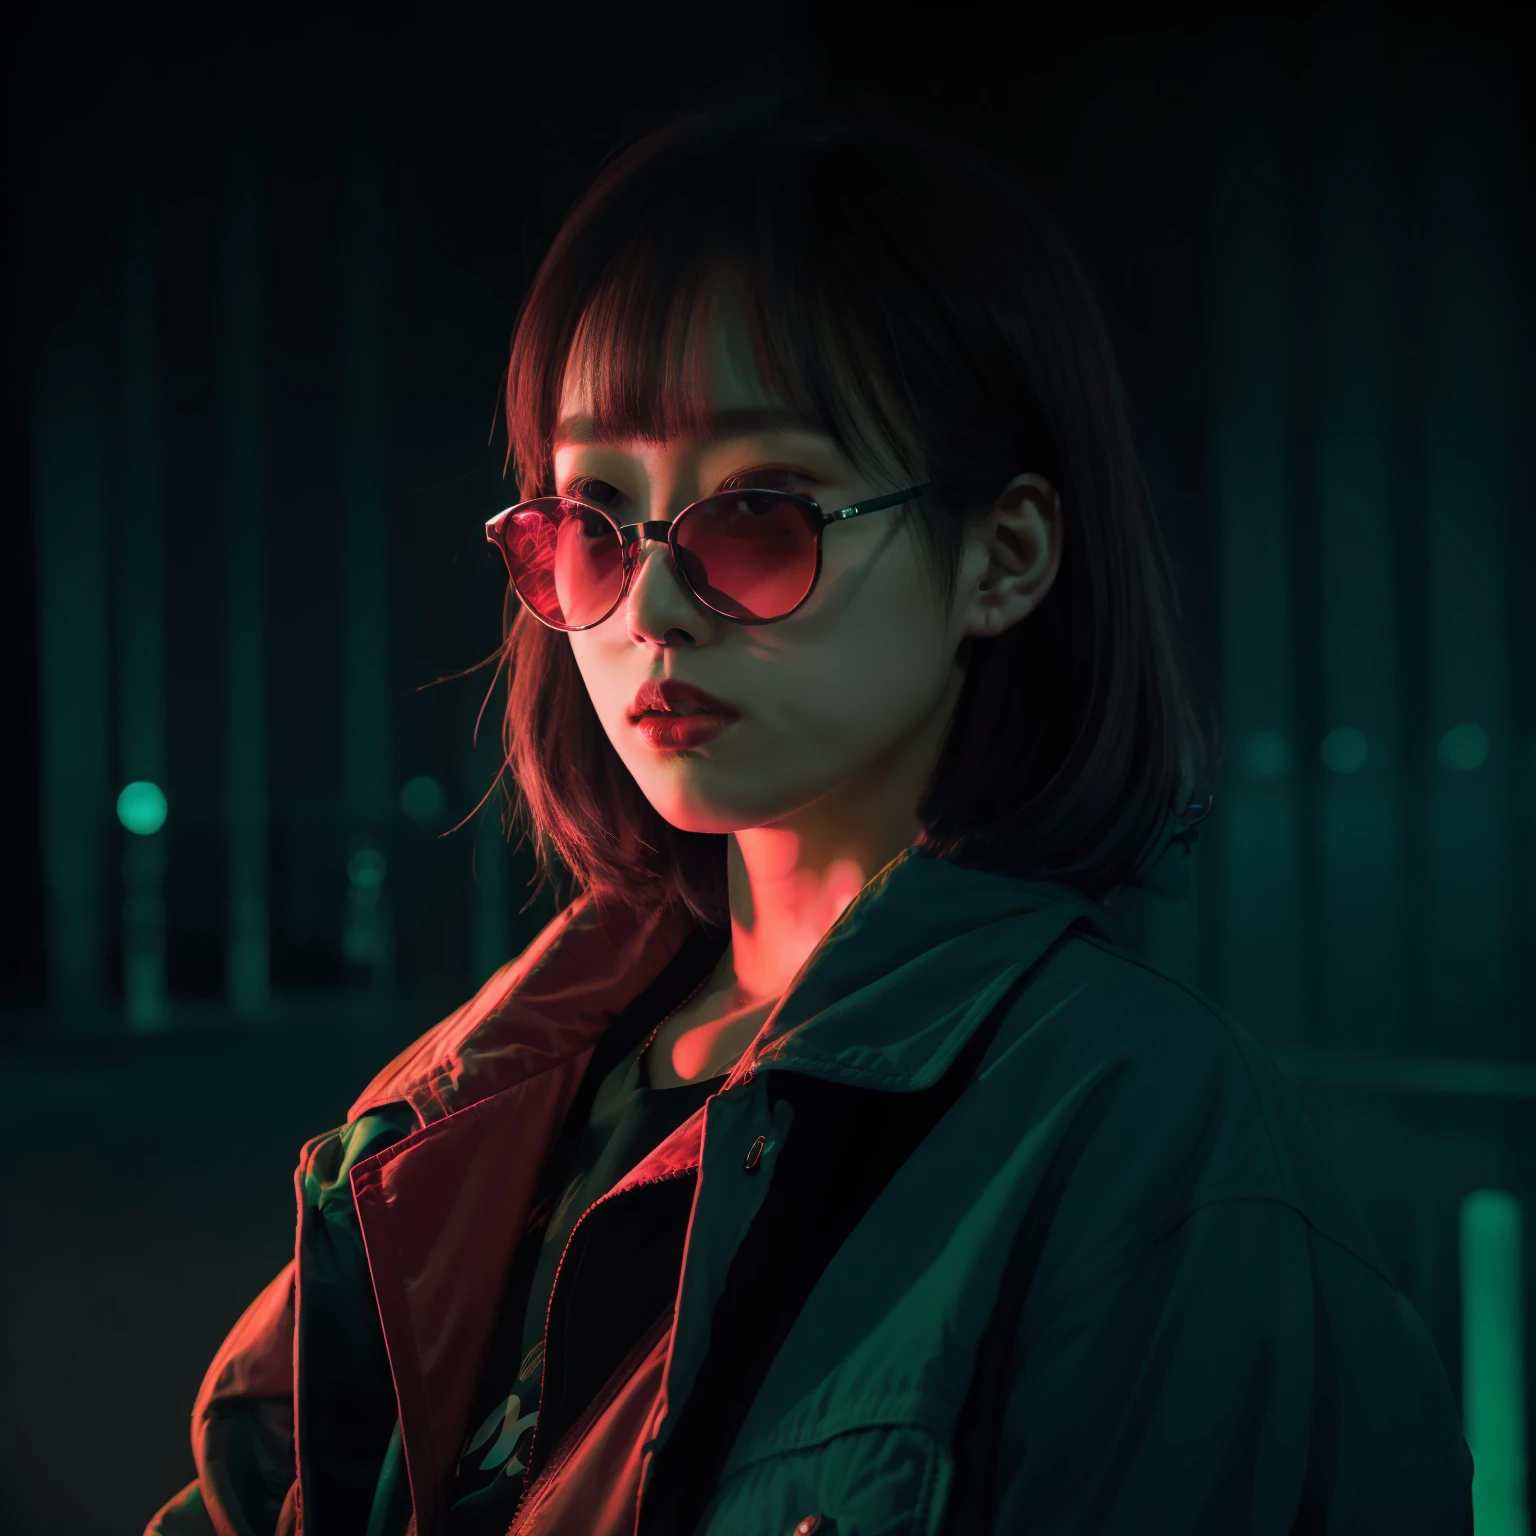 DSLR-Foto, Japanerin trägt eine rote Jacke, Sonnenbrille, NeonSchwarz, Neon, sanfte Beleuchtung, Realistisch, Grüne Beleuchtung, harter Schatten, Meisterwerk, beste Qualität, kompliziert, hohe Detailgenauigkeit, 8k, Modelshooting-Stil, Filmkorn,